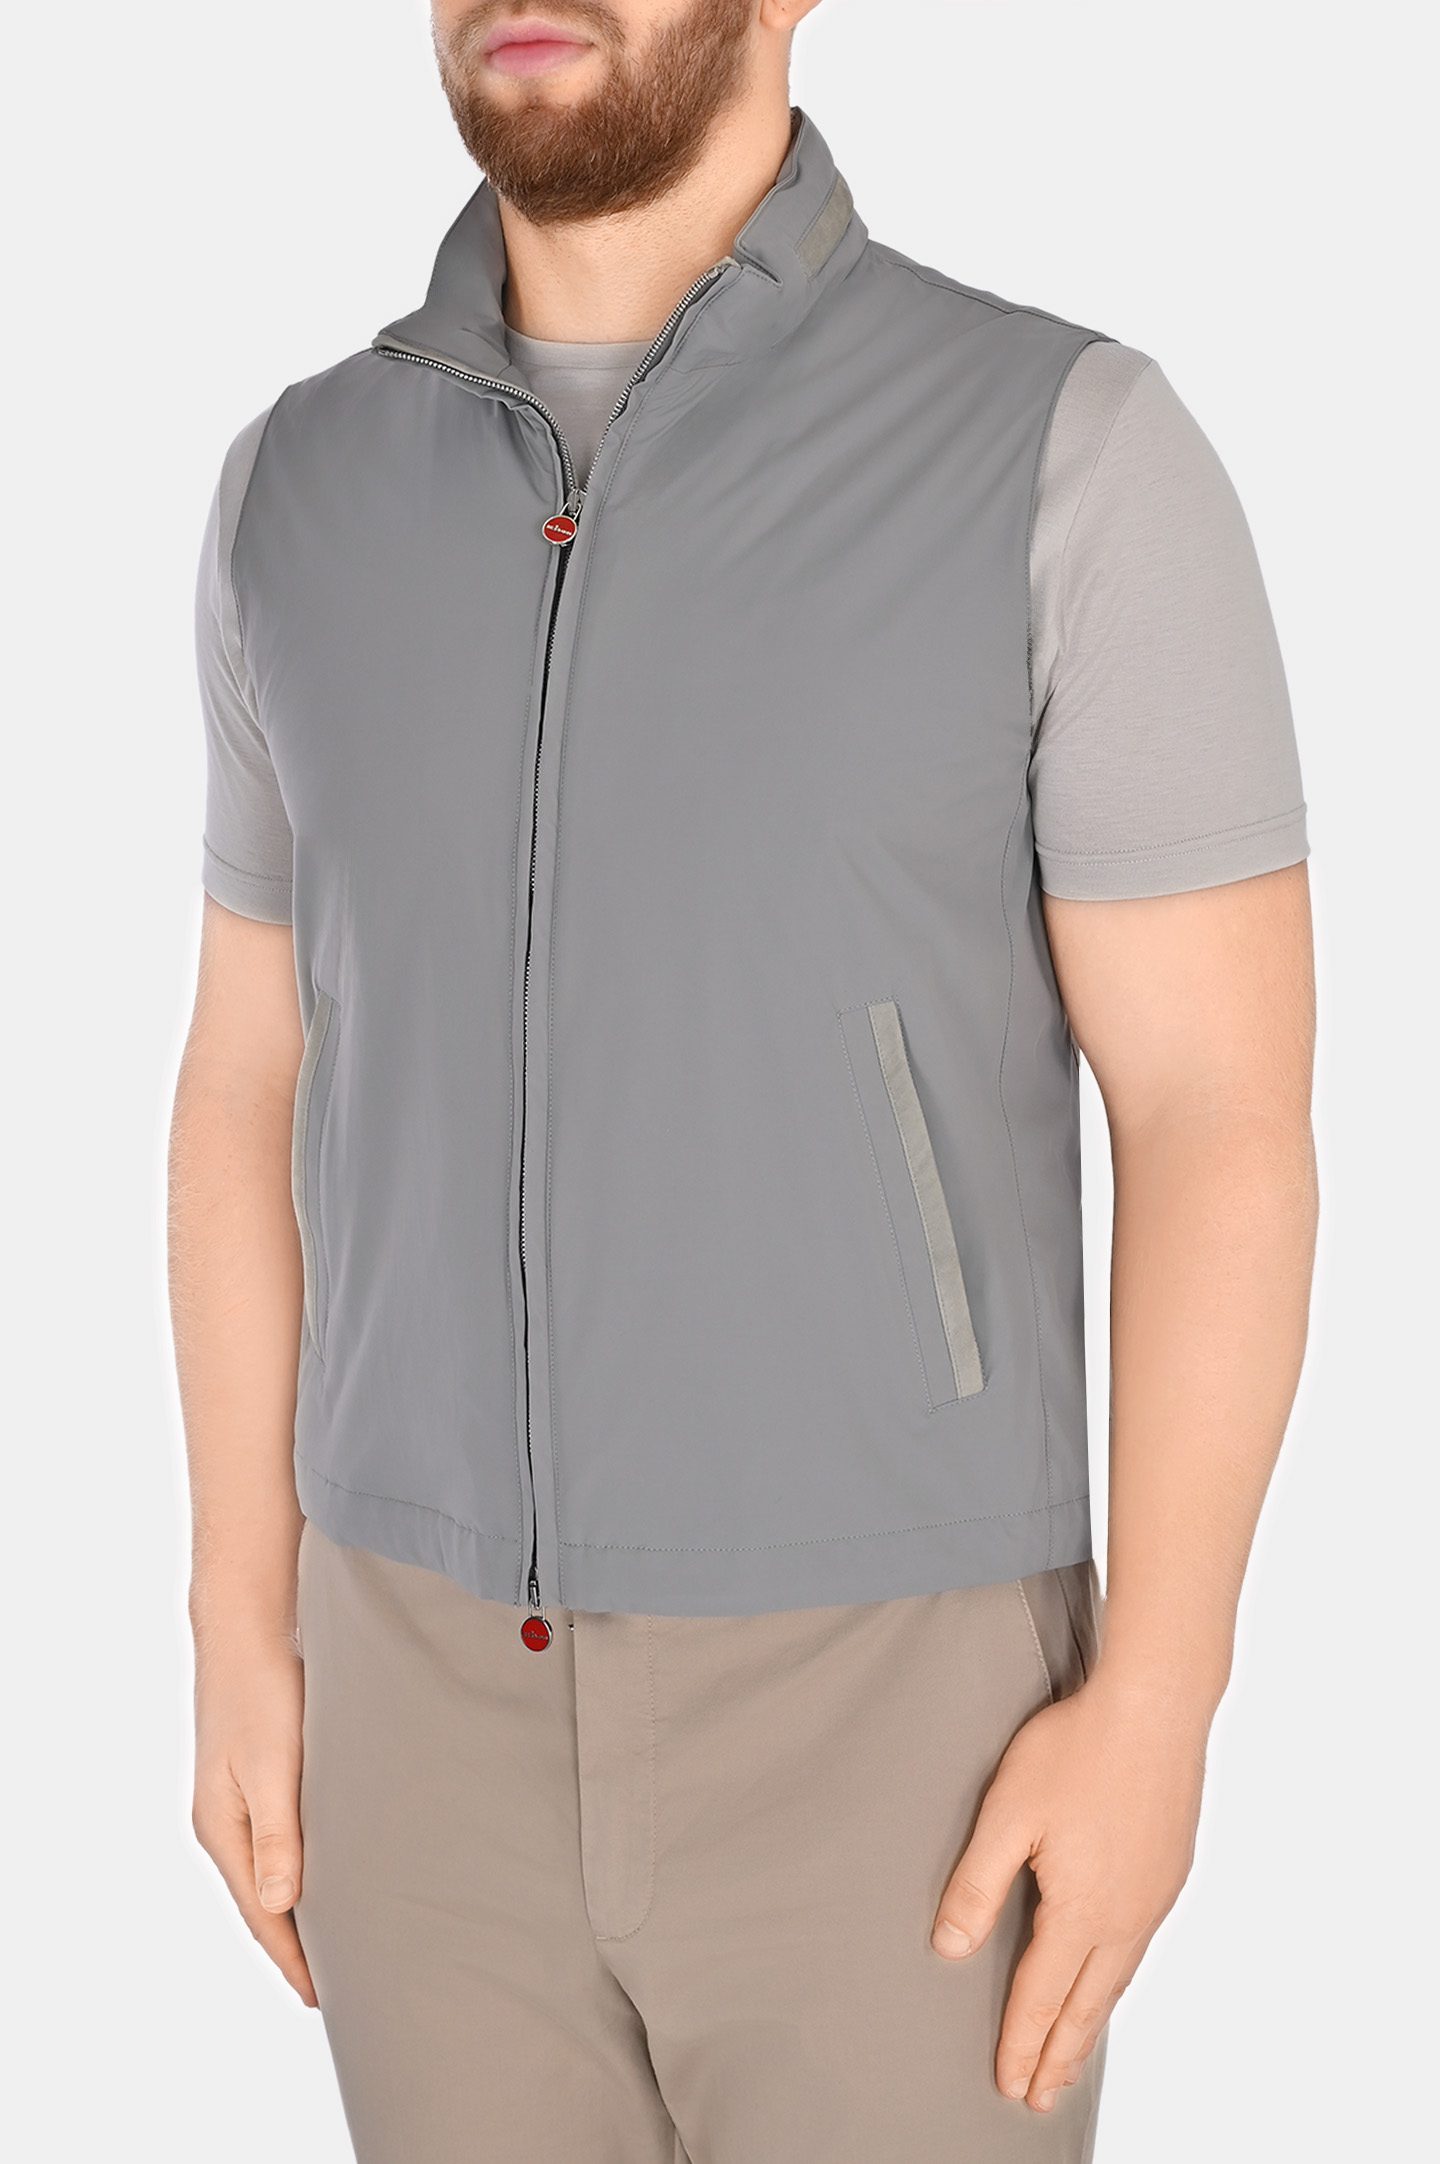 Жилет на молнии с карманами KITON UW1726V0832C0, цвет: Серый, Мужской